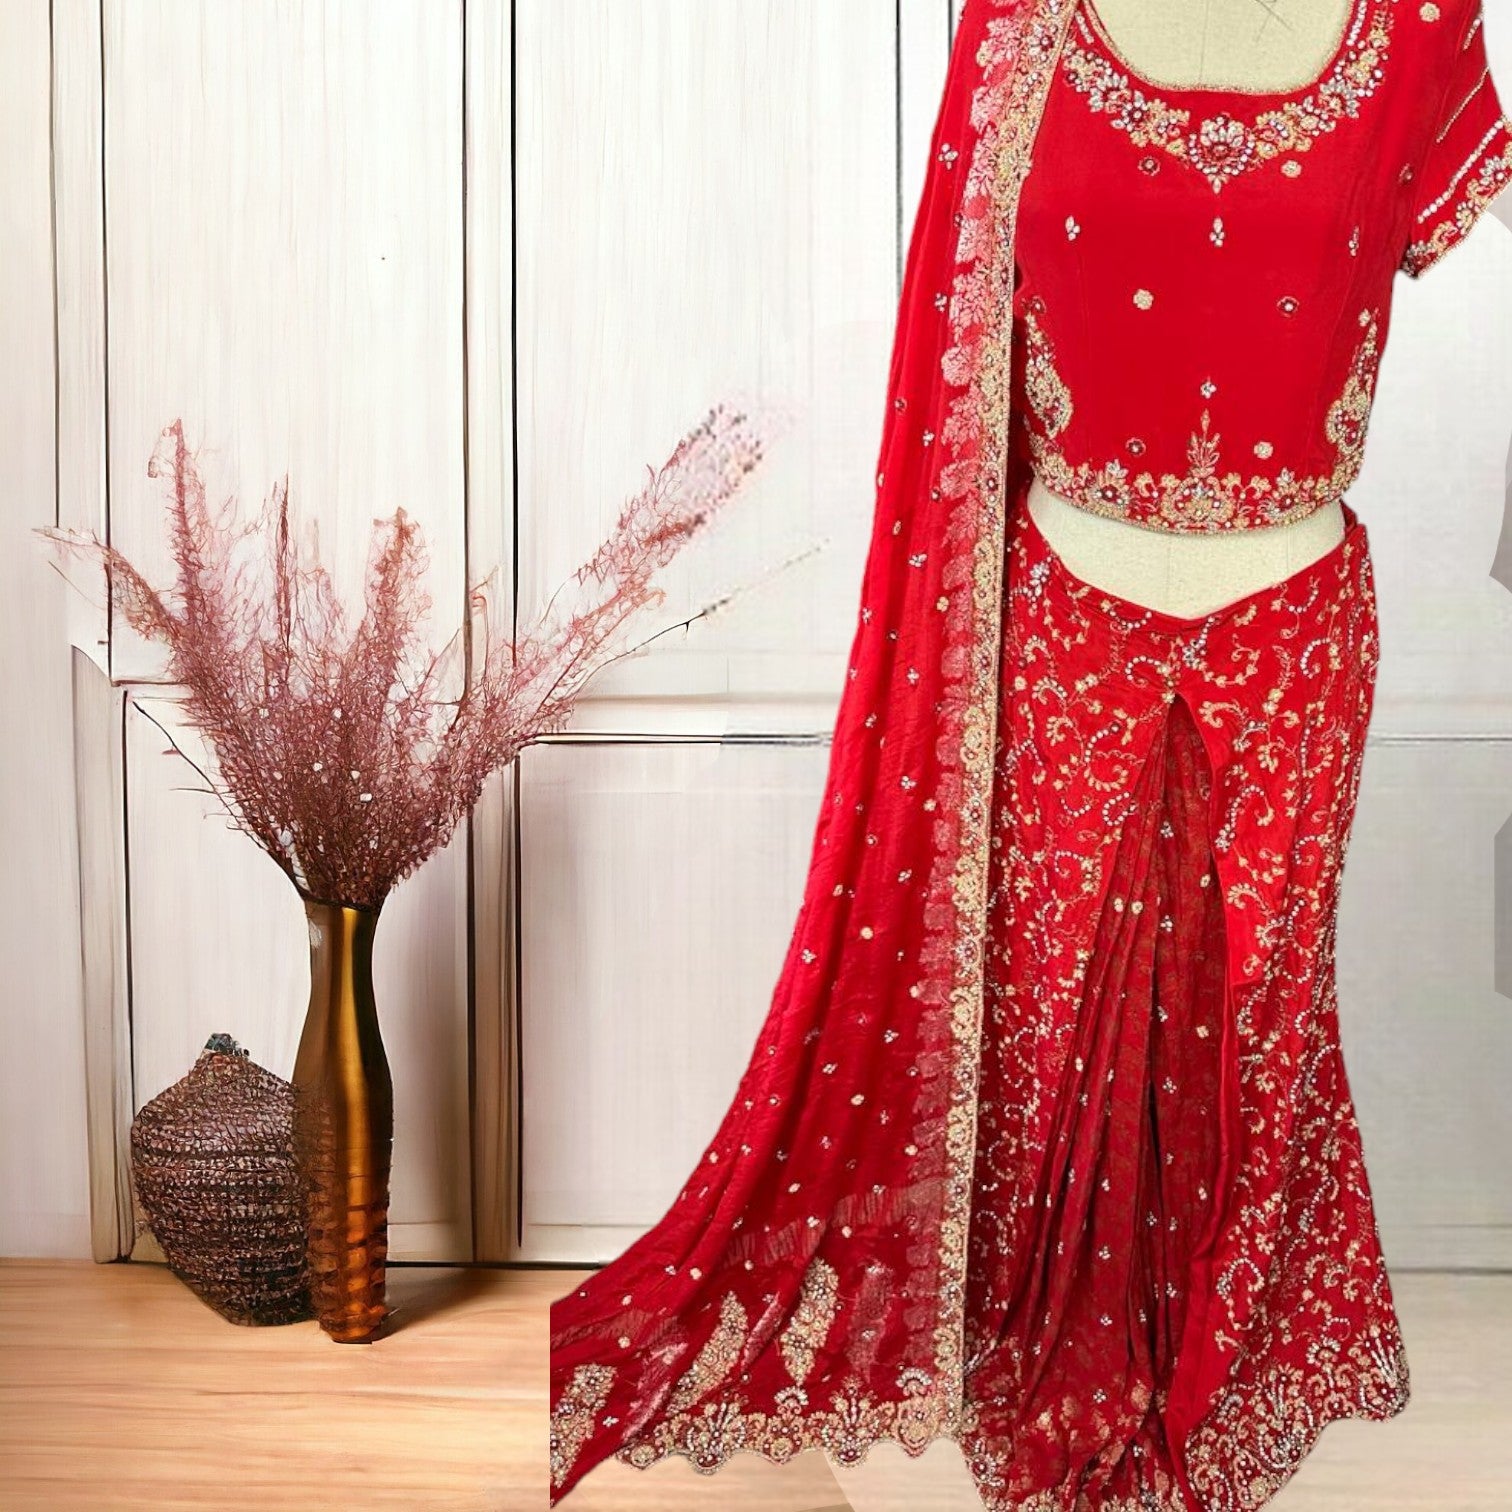 Scarlet Elegance: Bridal Lehnga Choli with Exquisite Kora Dabka Work-Stitched